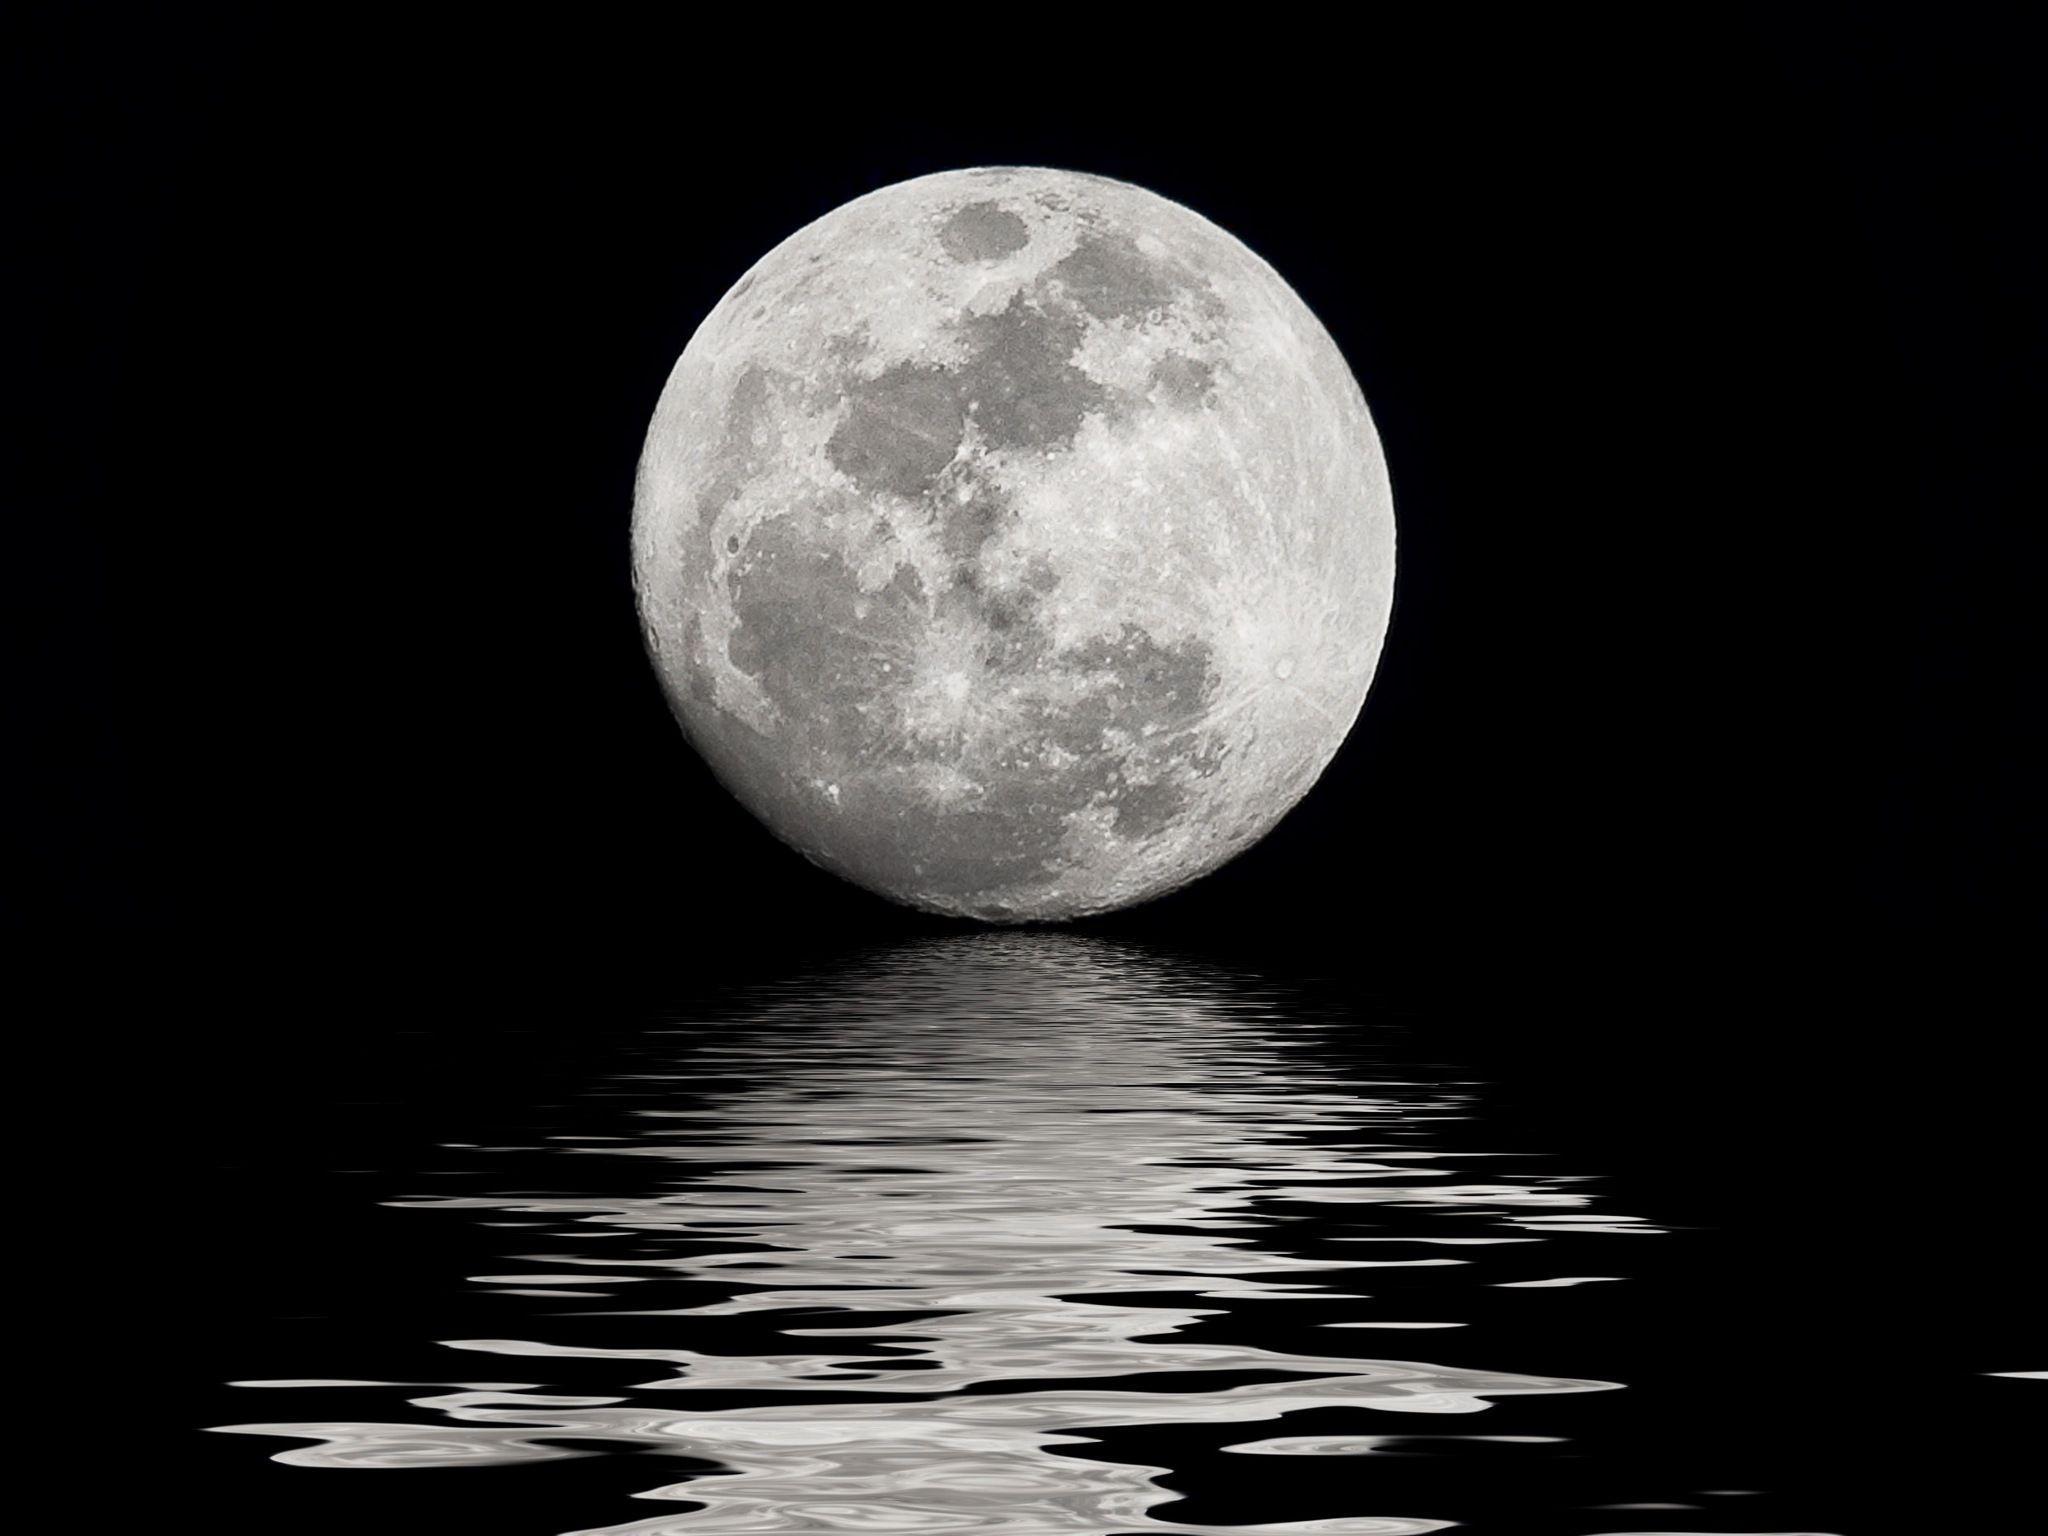 Moon Sea HD Wallpaper. Moon and Sea Image